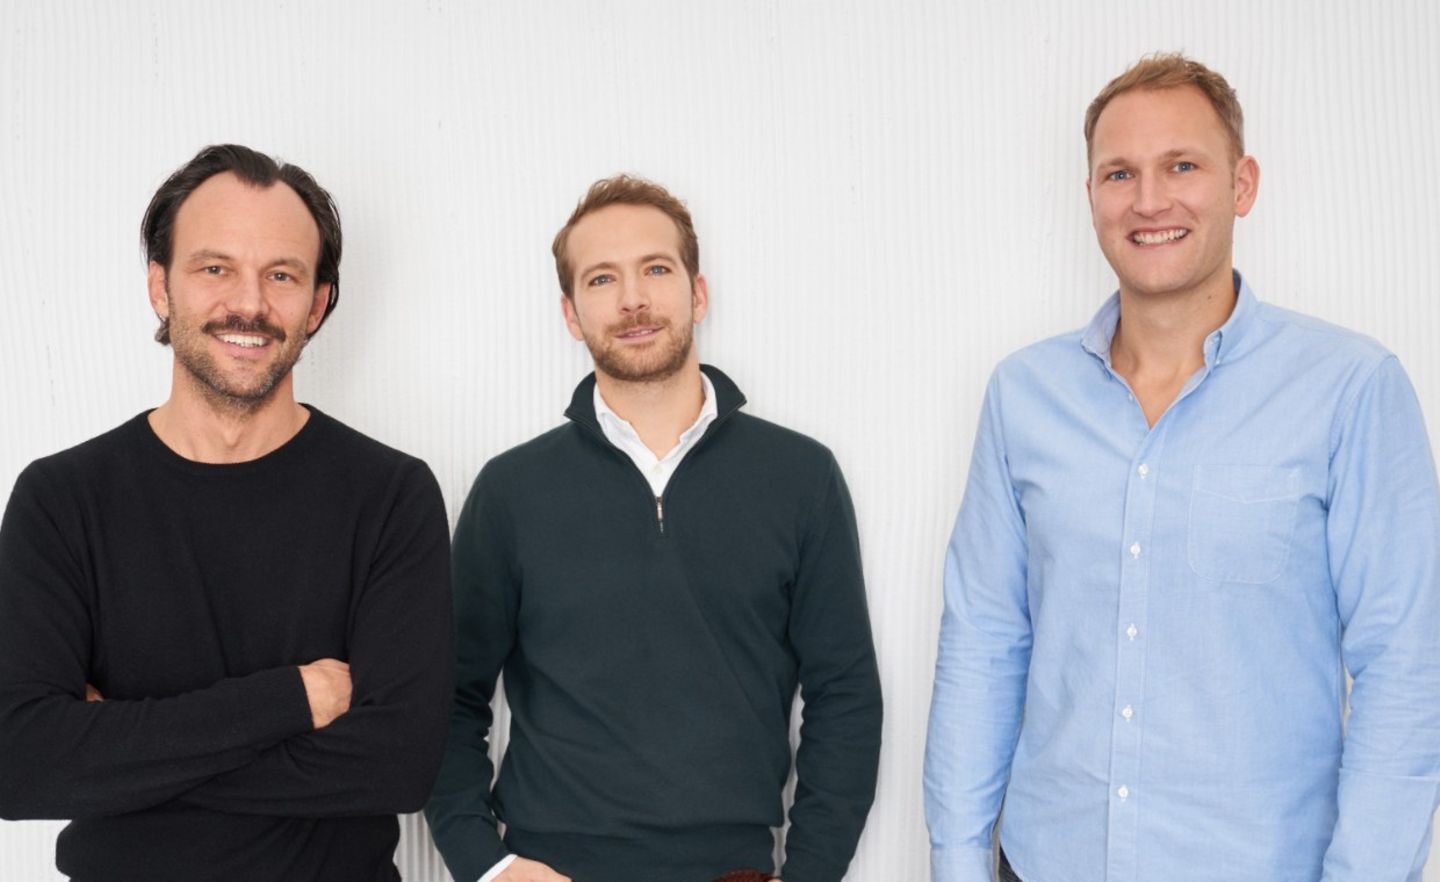 Daniel Glasner, Filip Dames und Christian Meermann (v.r.n.l.) sind die Gründer von Cherry Ventures